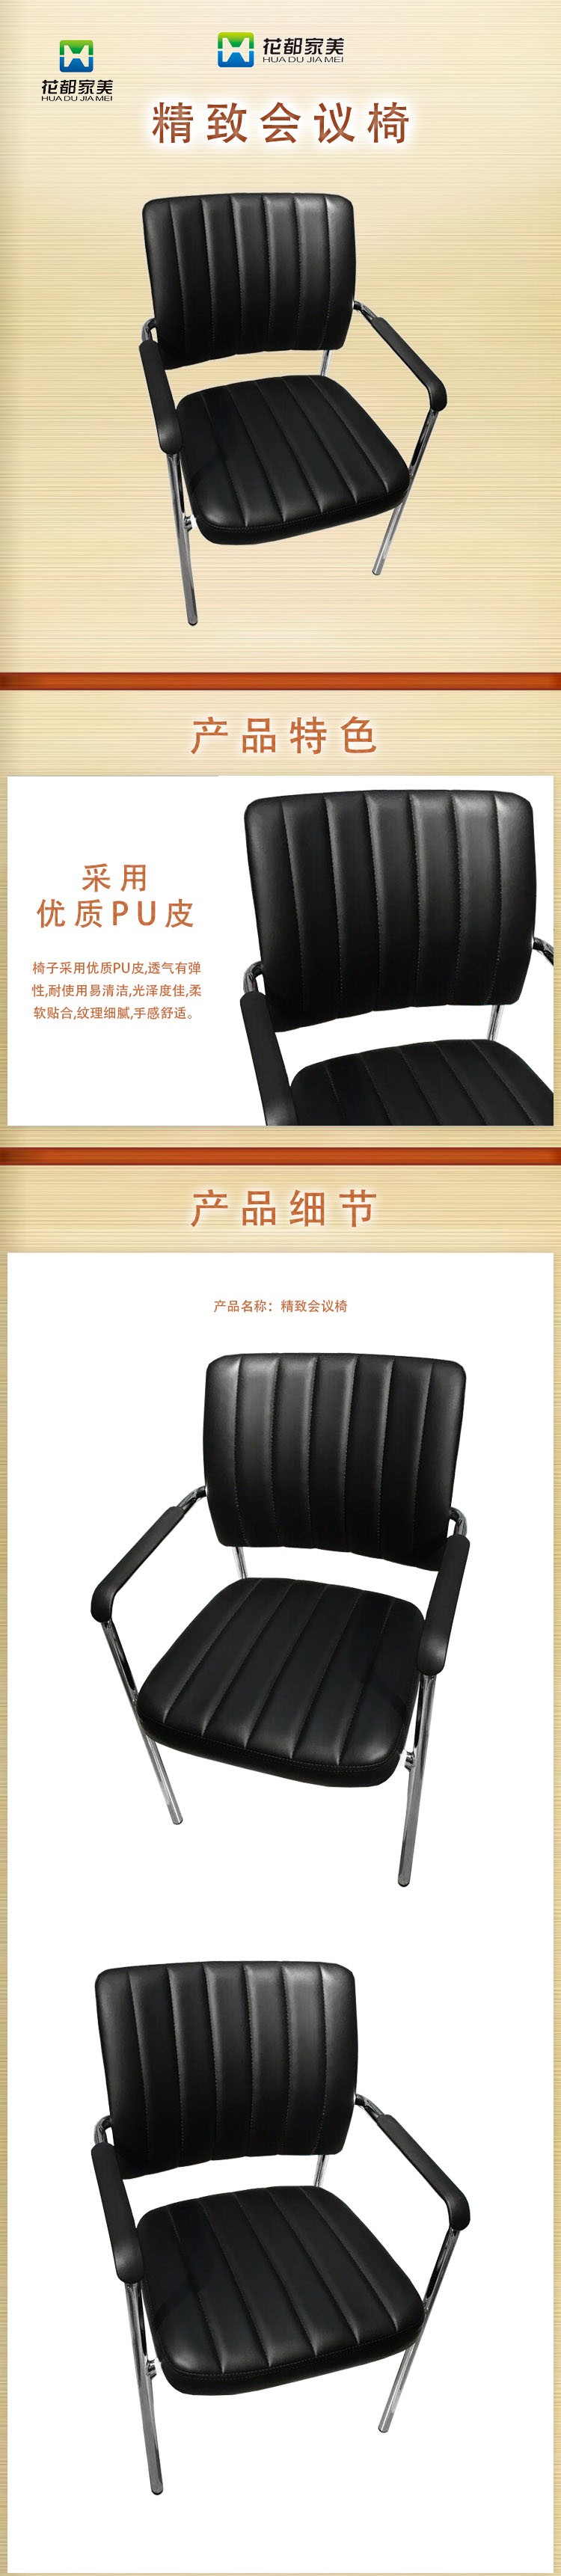 精致会议椅3.jpg